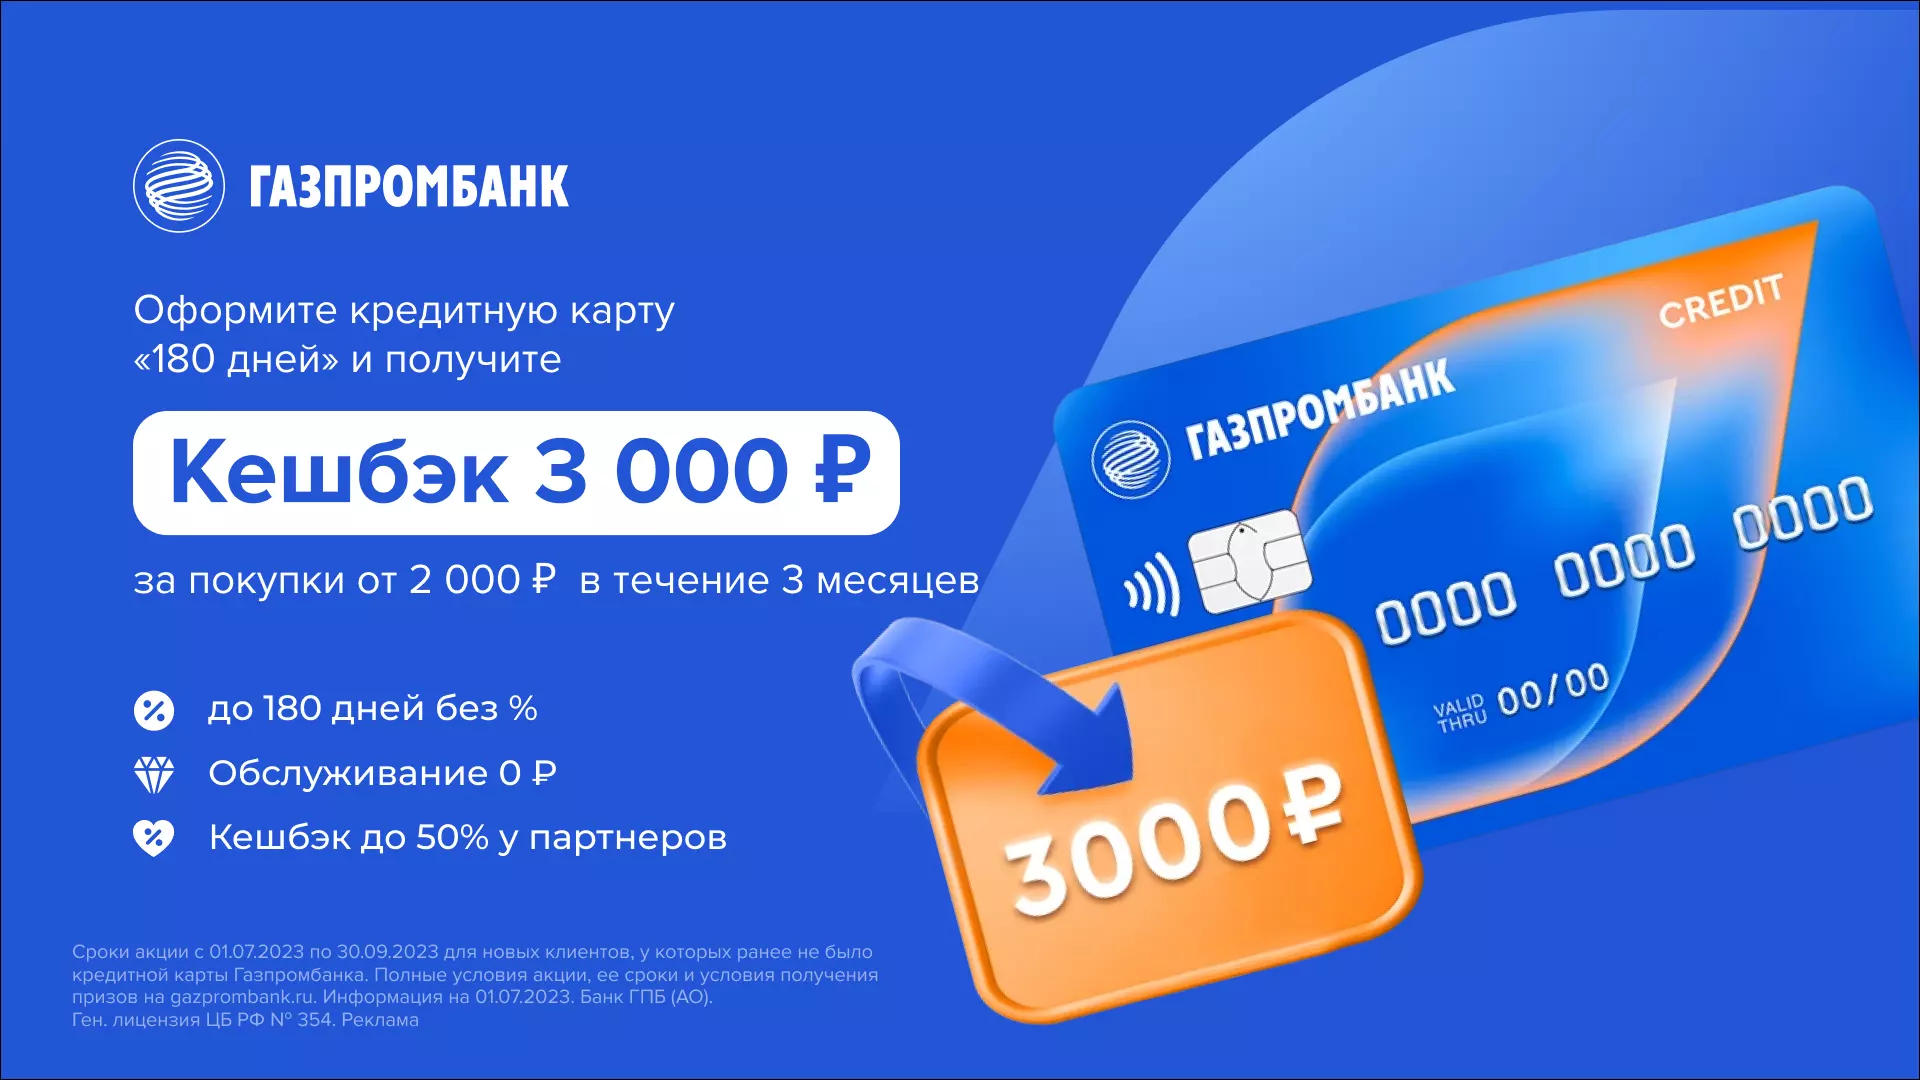 Кэшбэк 3000 рублей за покупки в течении 3 месяцев по кредитной карте Газпромбанка